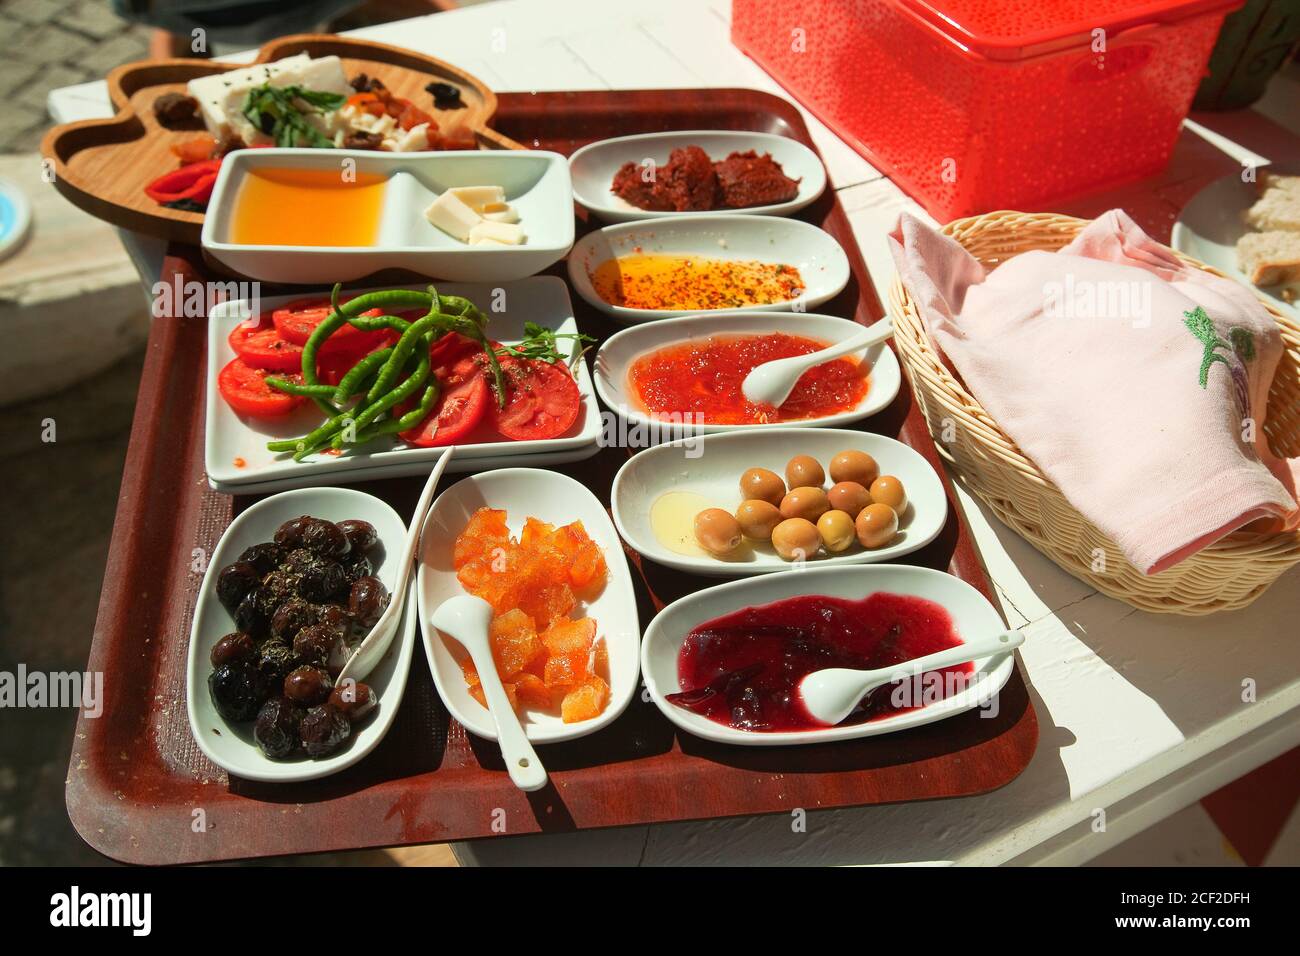 Desayuno turco tradicional con aceitunas, mermelada, miel, mermelada, frutas, queso, mantequilla, tomates y pimientos listos para servir en un restaurante en el Foto de stock